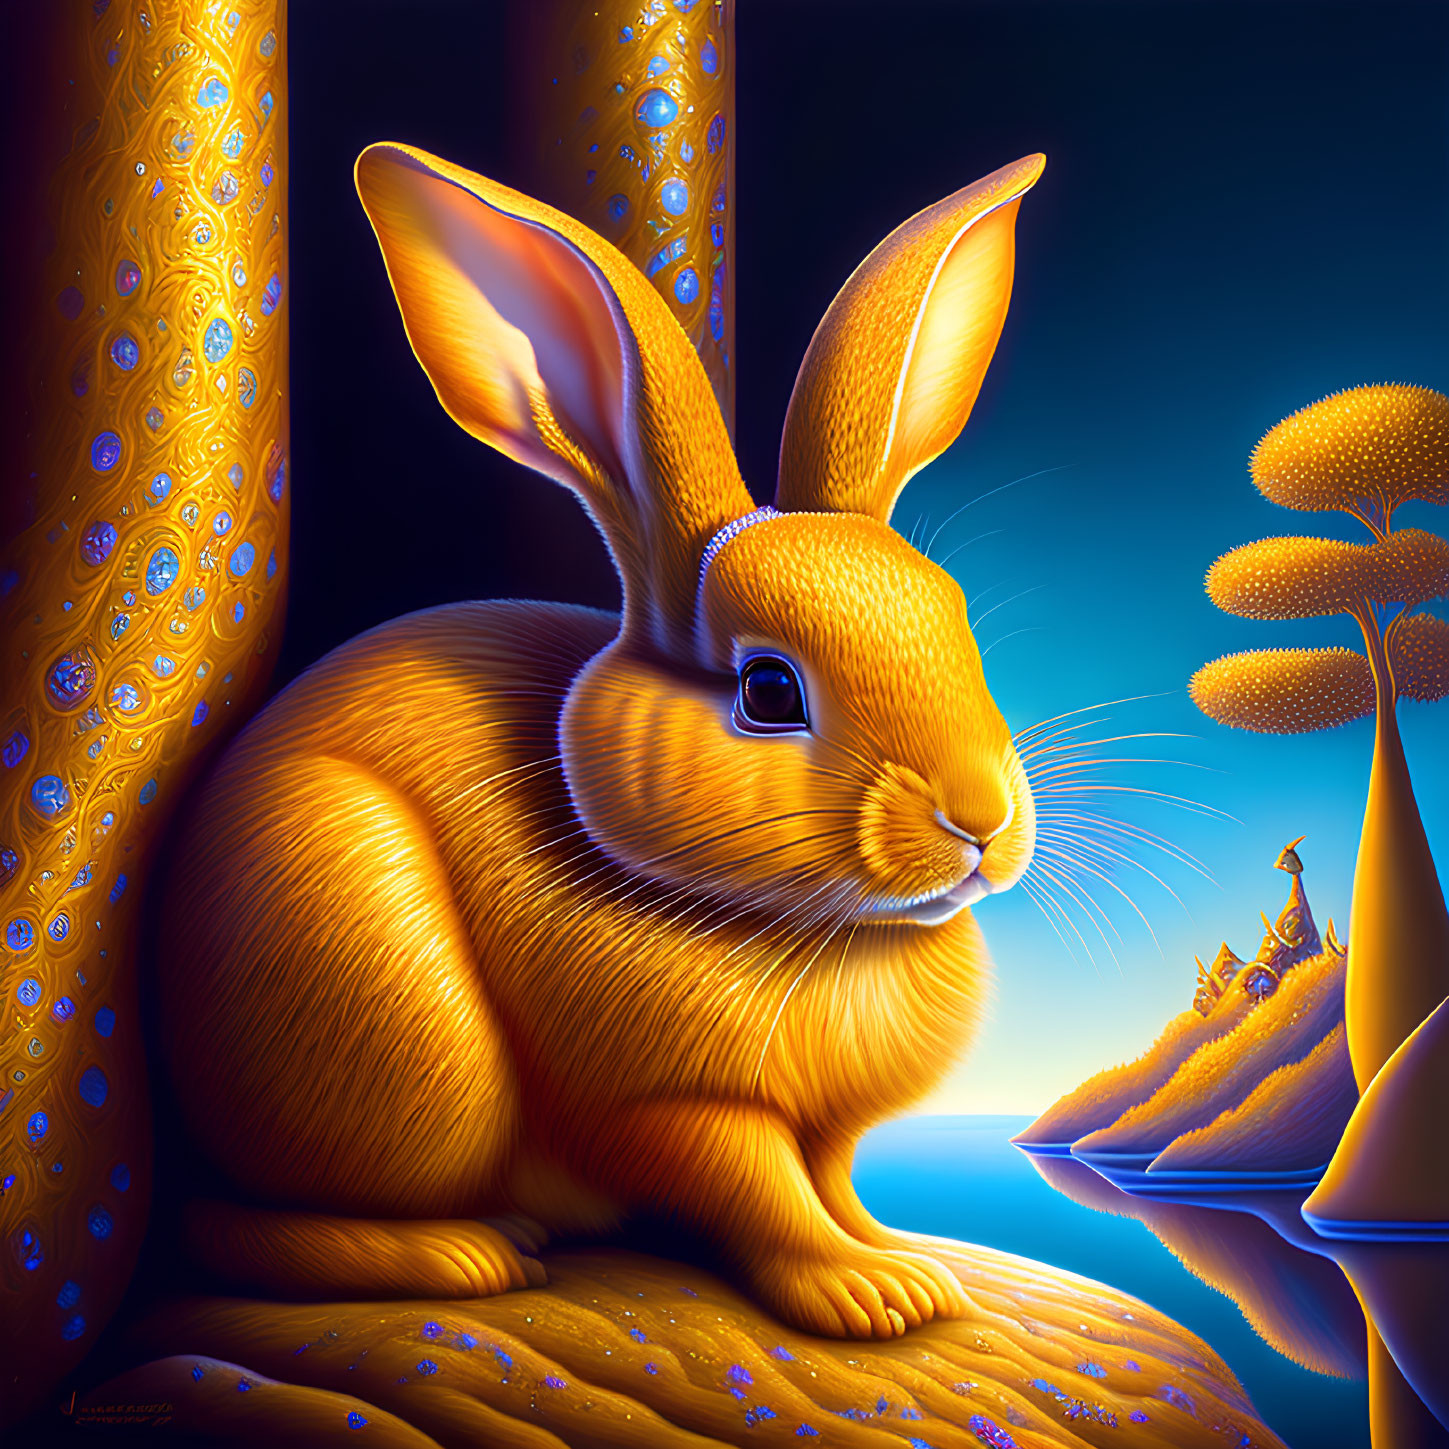 Golden Rabbit Painting with Luminous Fur and Moonlit Landscape